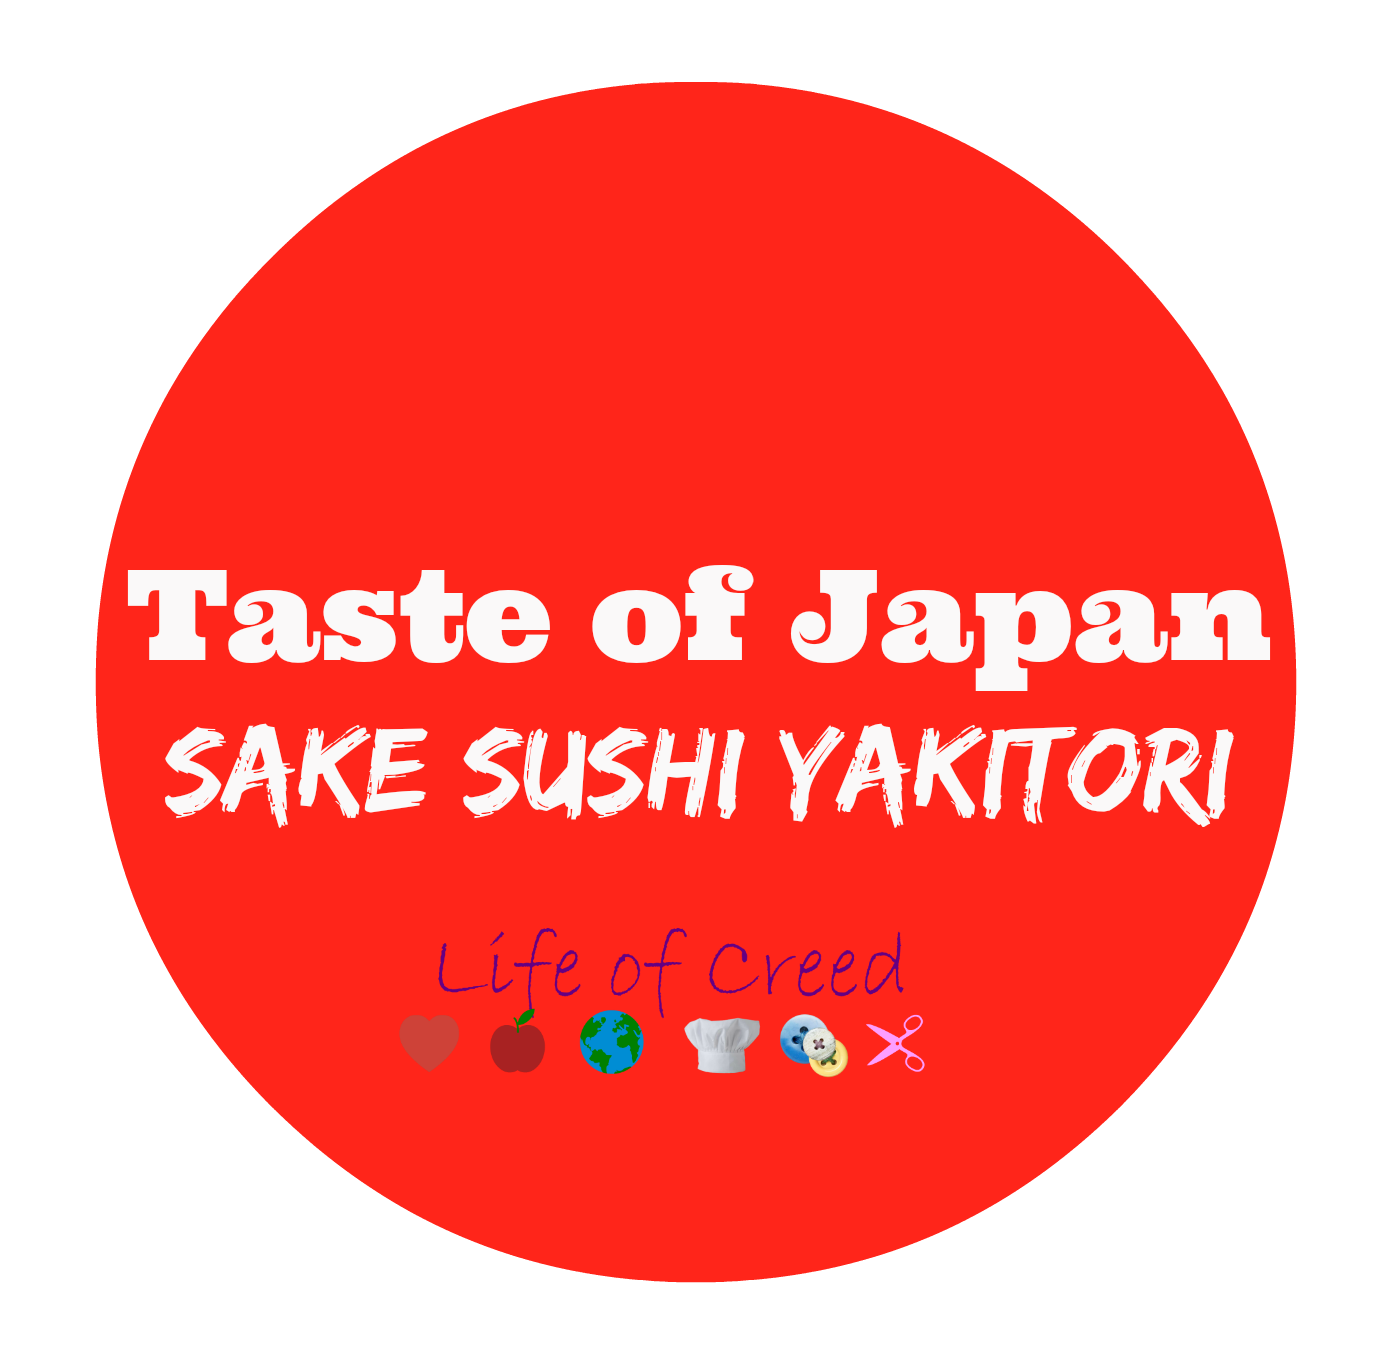 Taste of Japan: Sake Sushi Yakitori